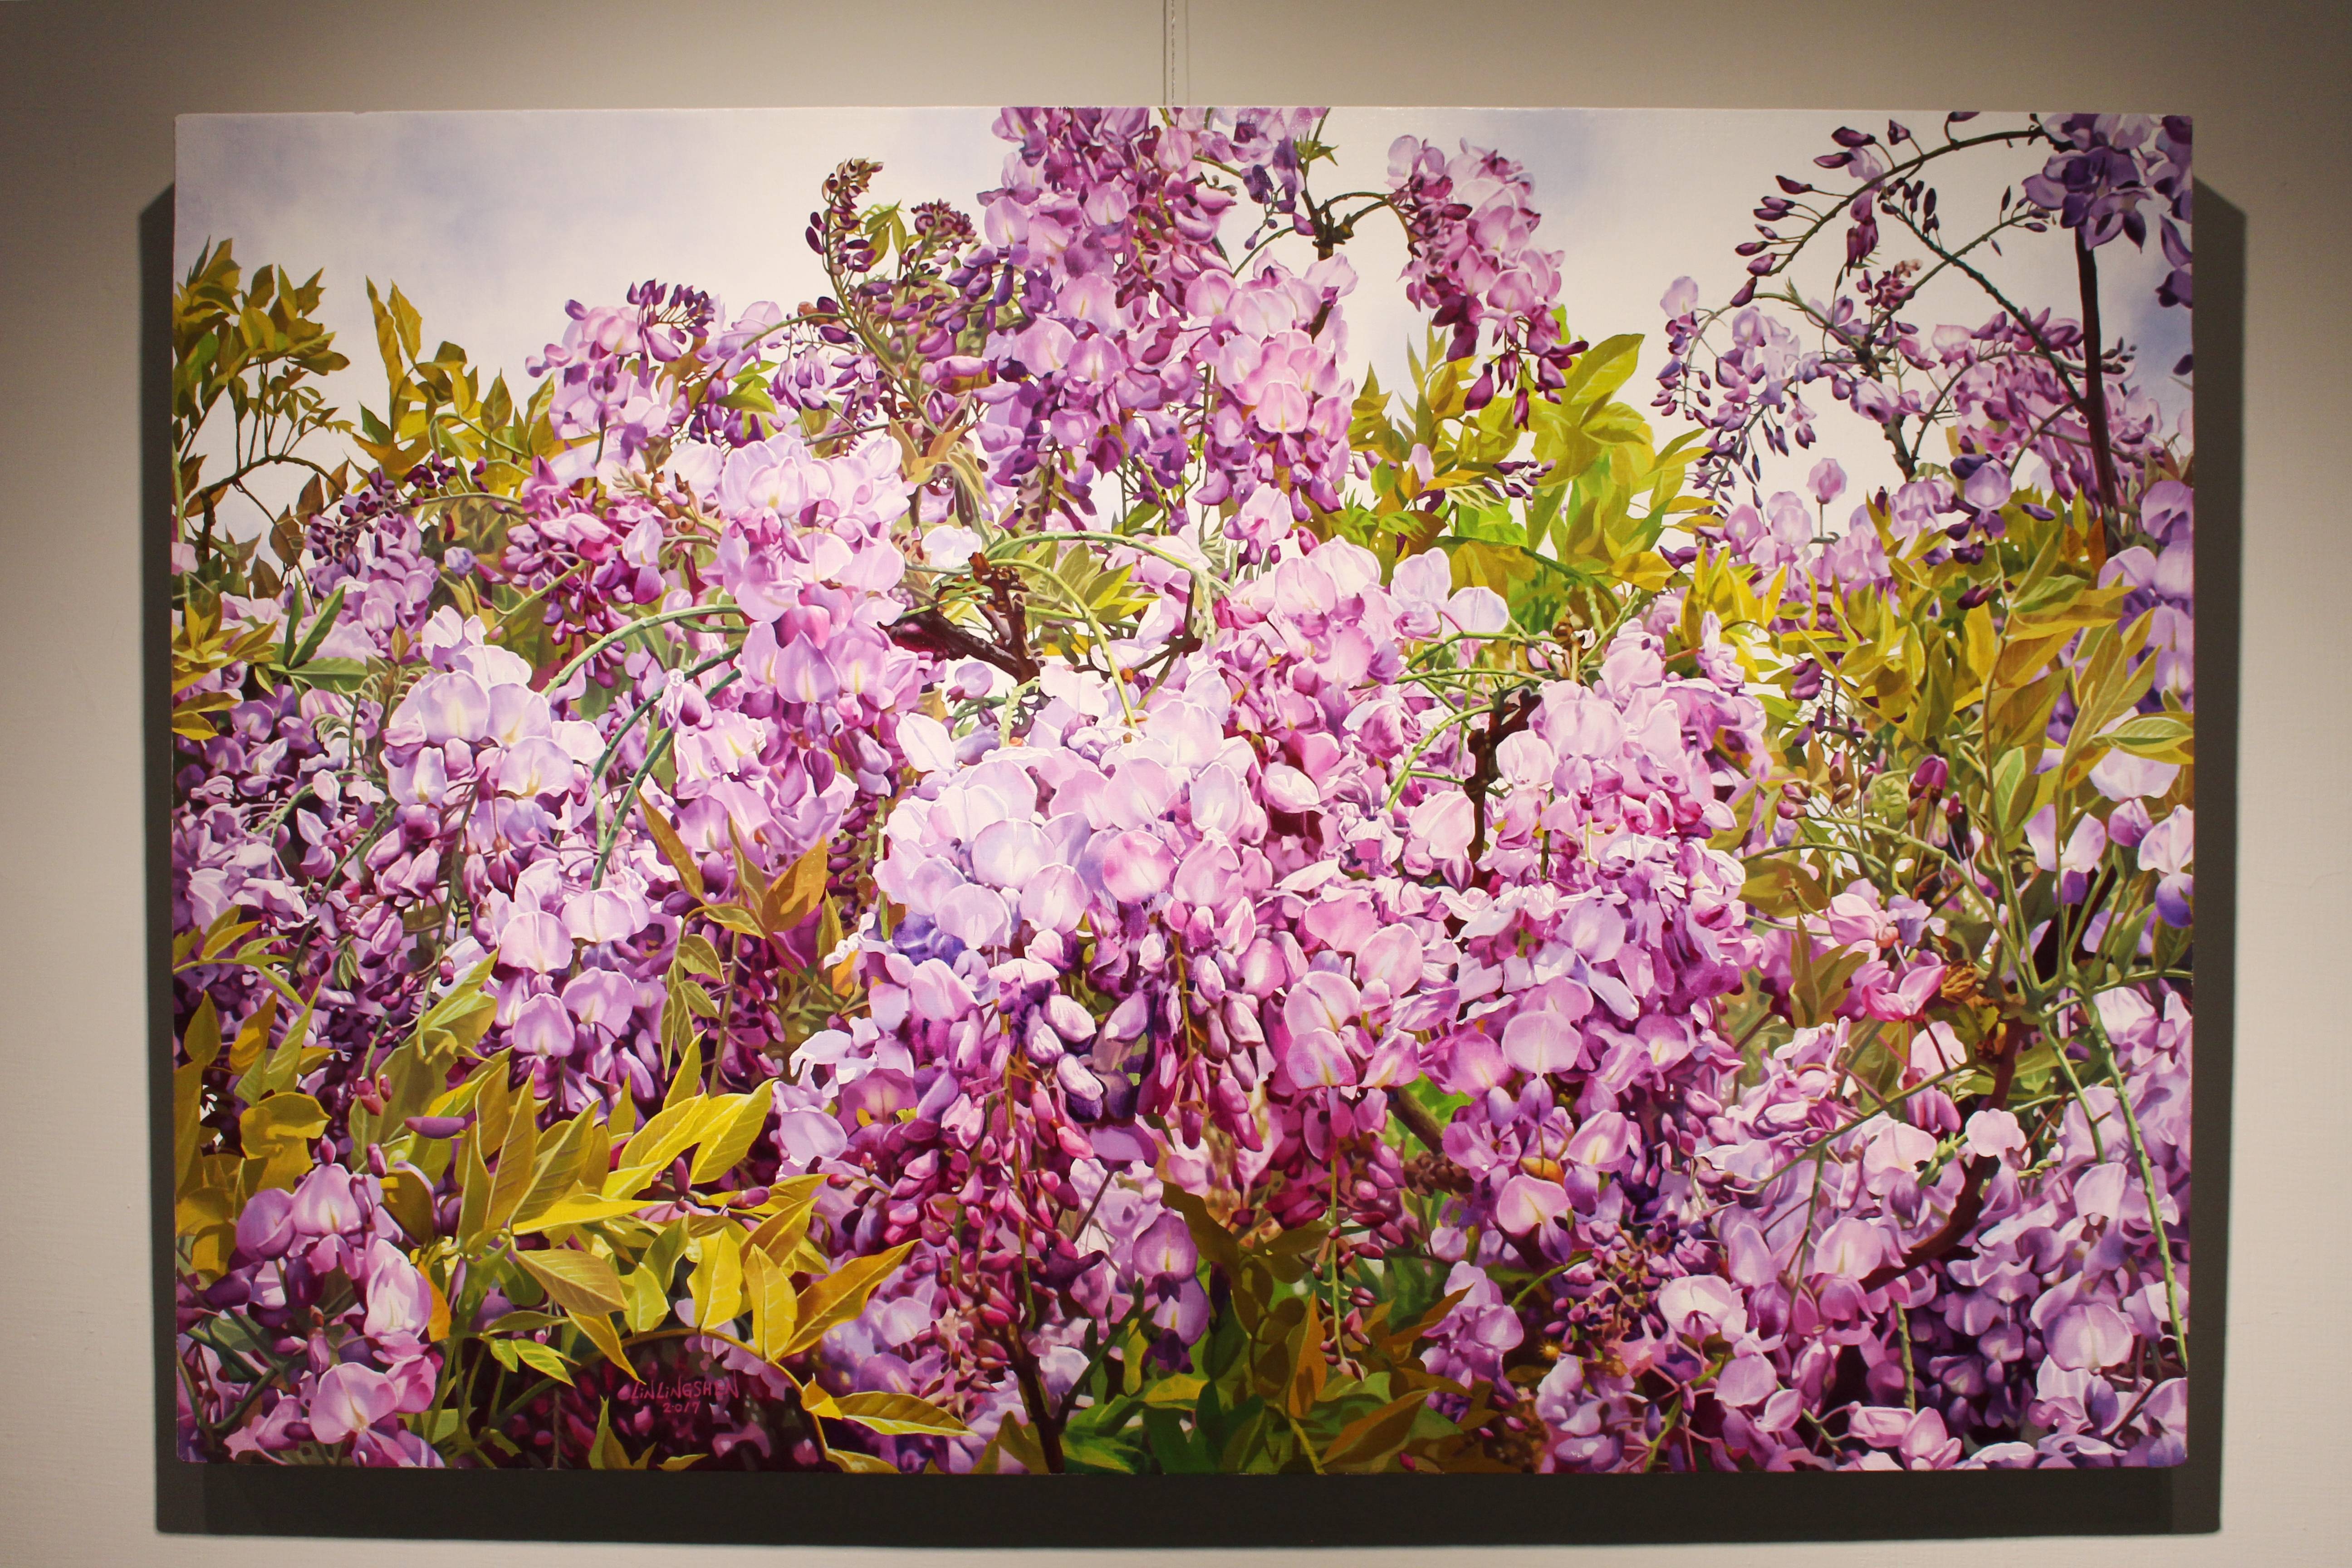 林嶺森，《紫藤之二》，2017，60.5×91cm (30M)，油彩/畫布。 